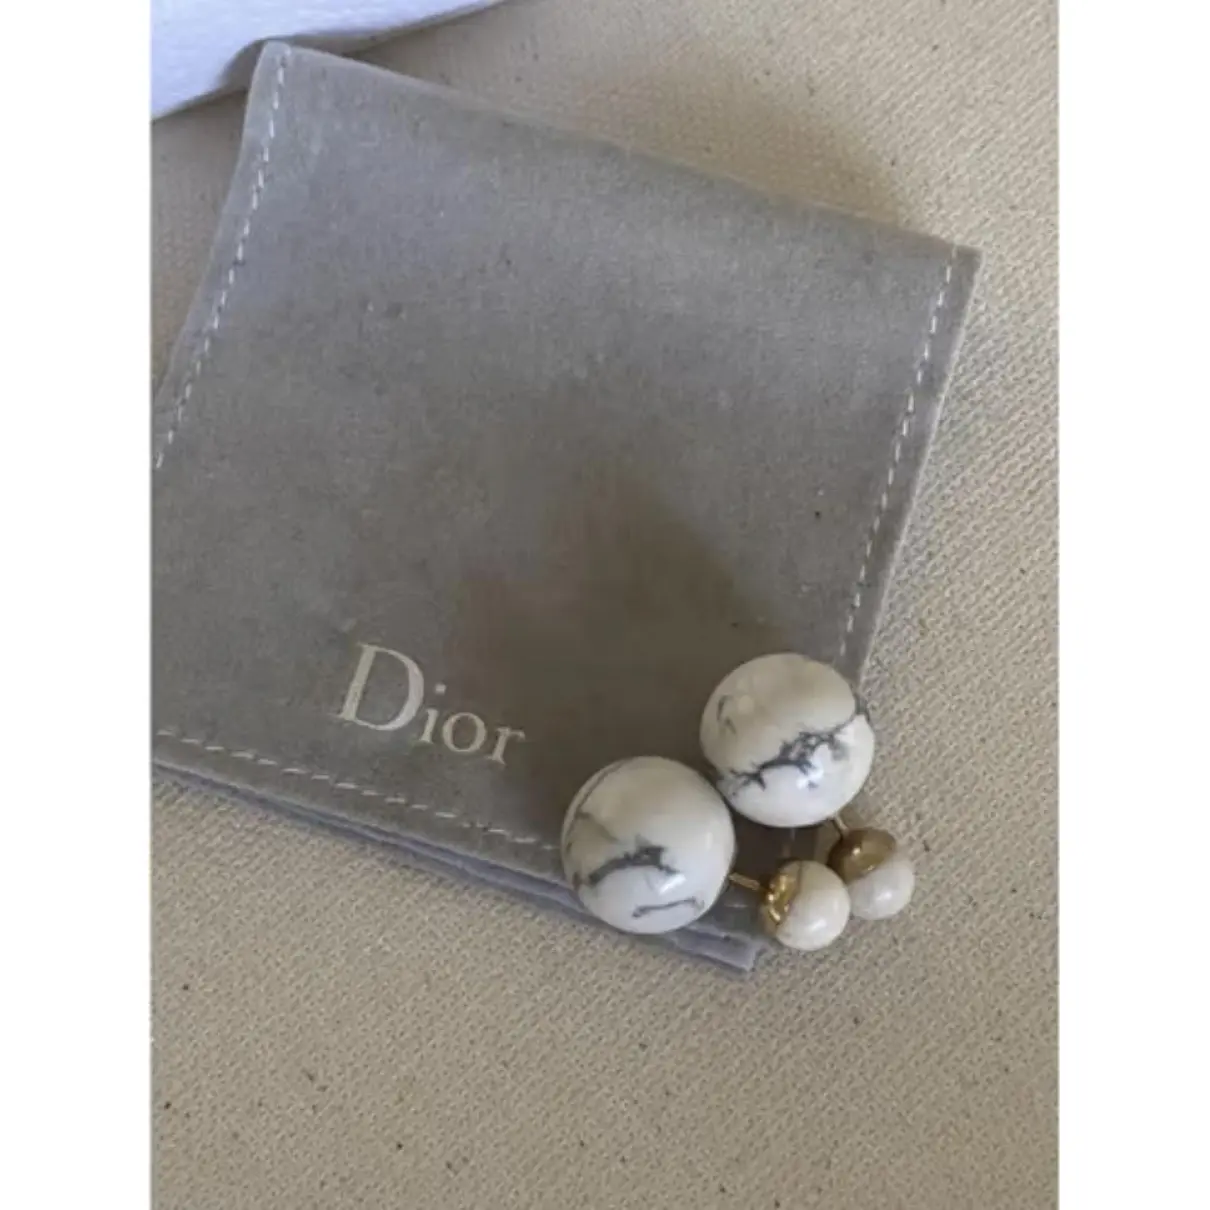 Buy Dior Ceramic earrings online